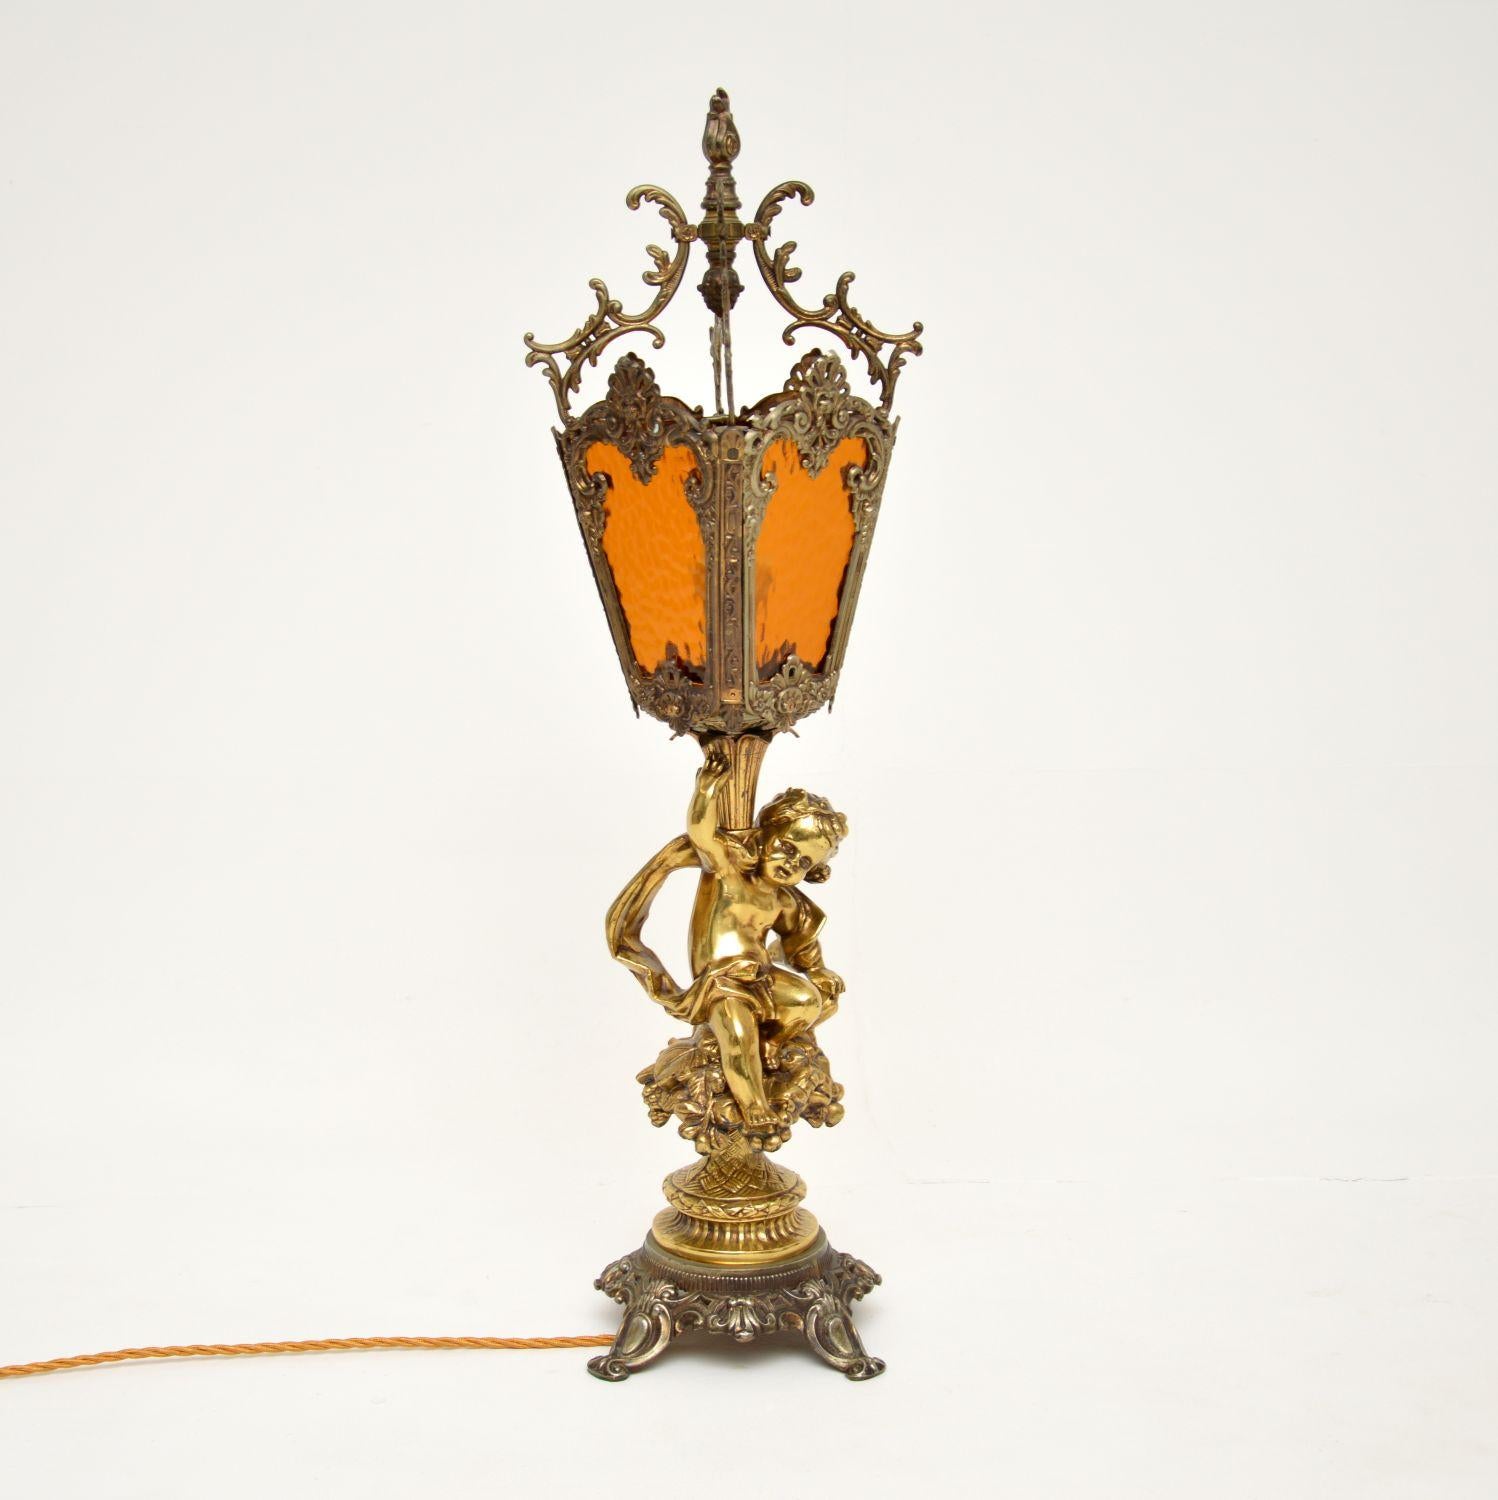 Eine große und atemberaubende antike Tischlampe aus vergoldetem Metall und Messing, mit originalen strukturierten Glasschirmen. Wir glauben, dass sie französisch ist und aus der Zeit um 1930-50 stammt.

Es ist von absolut wunderbarer Qualität, mit